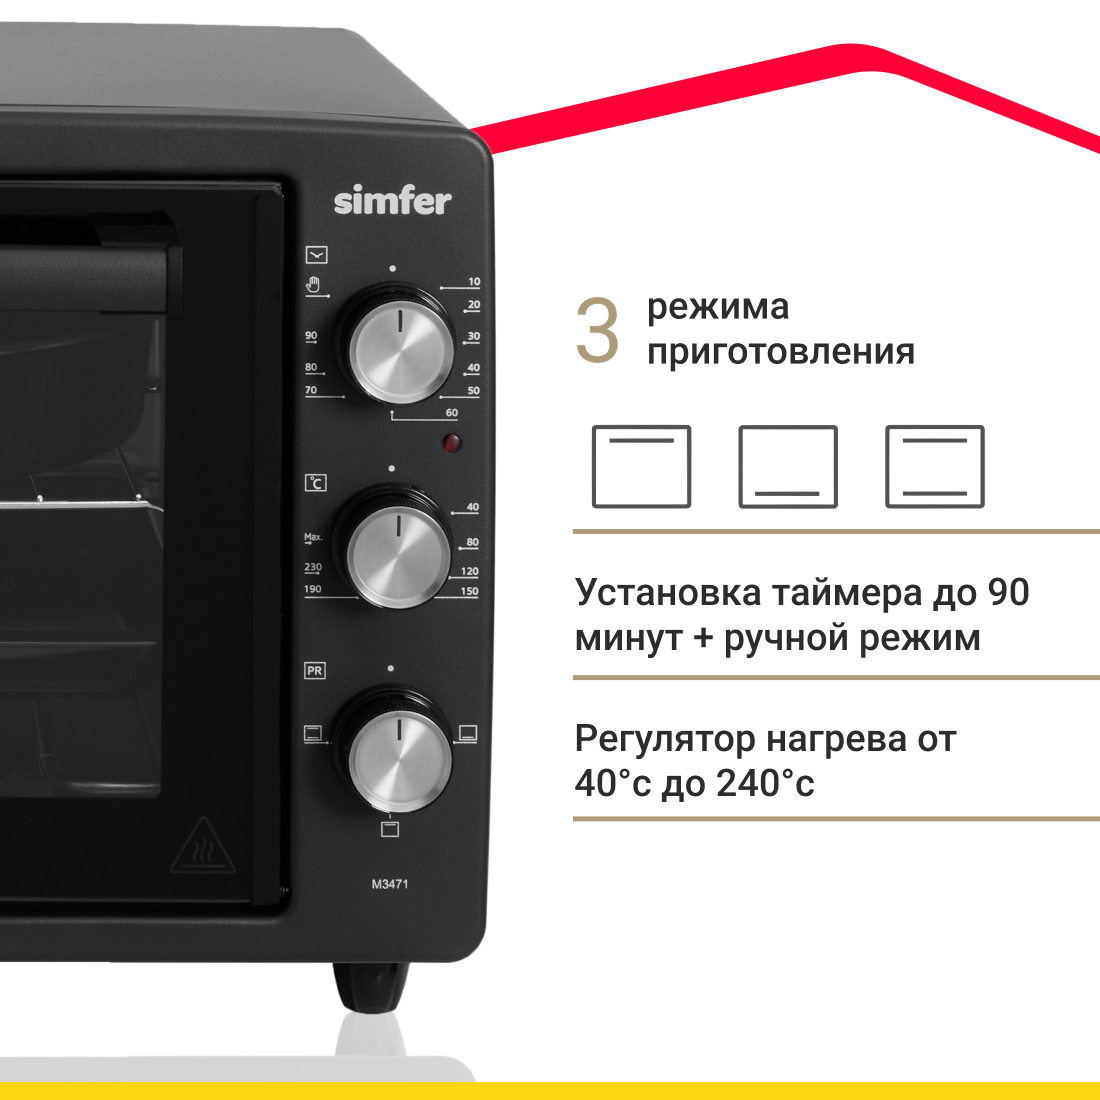 Мини-печь Simfer M3471 (3 режима, цвет черный) Мини-печь Simfer M3471 (3 режима, цвет черный) - фото 2